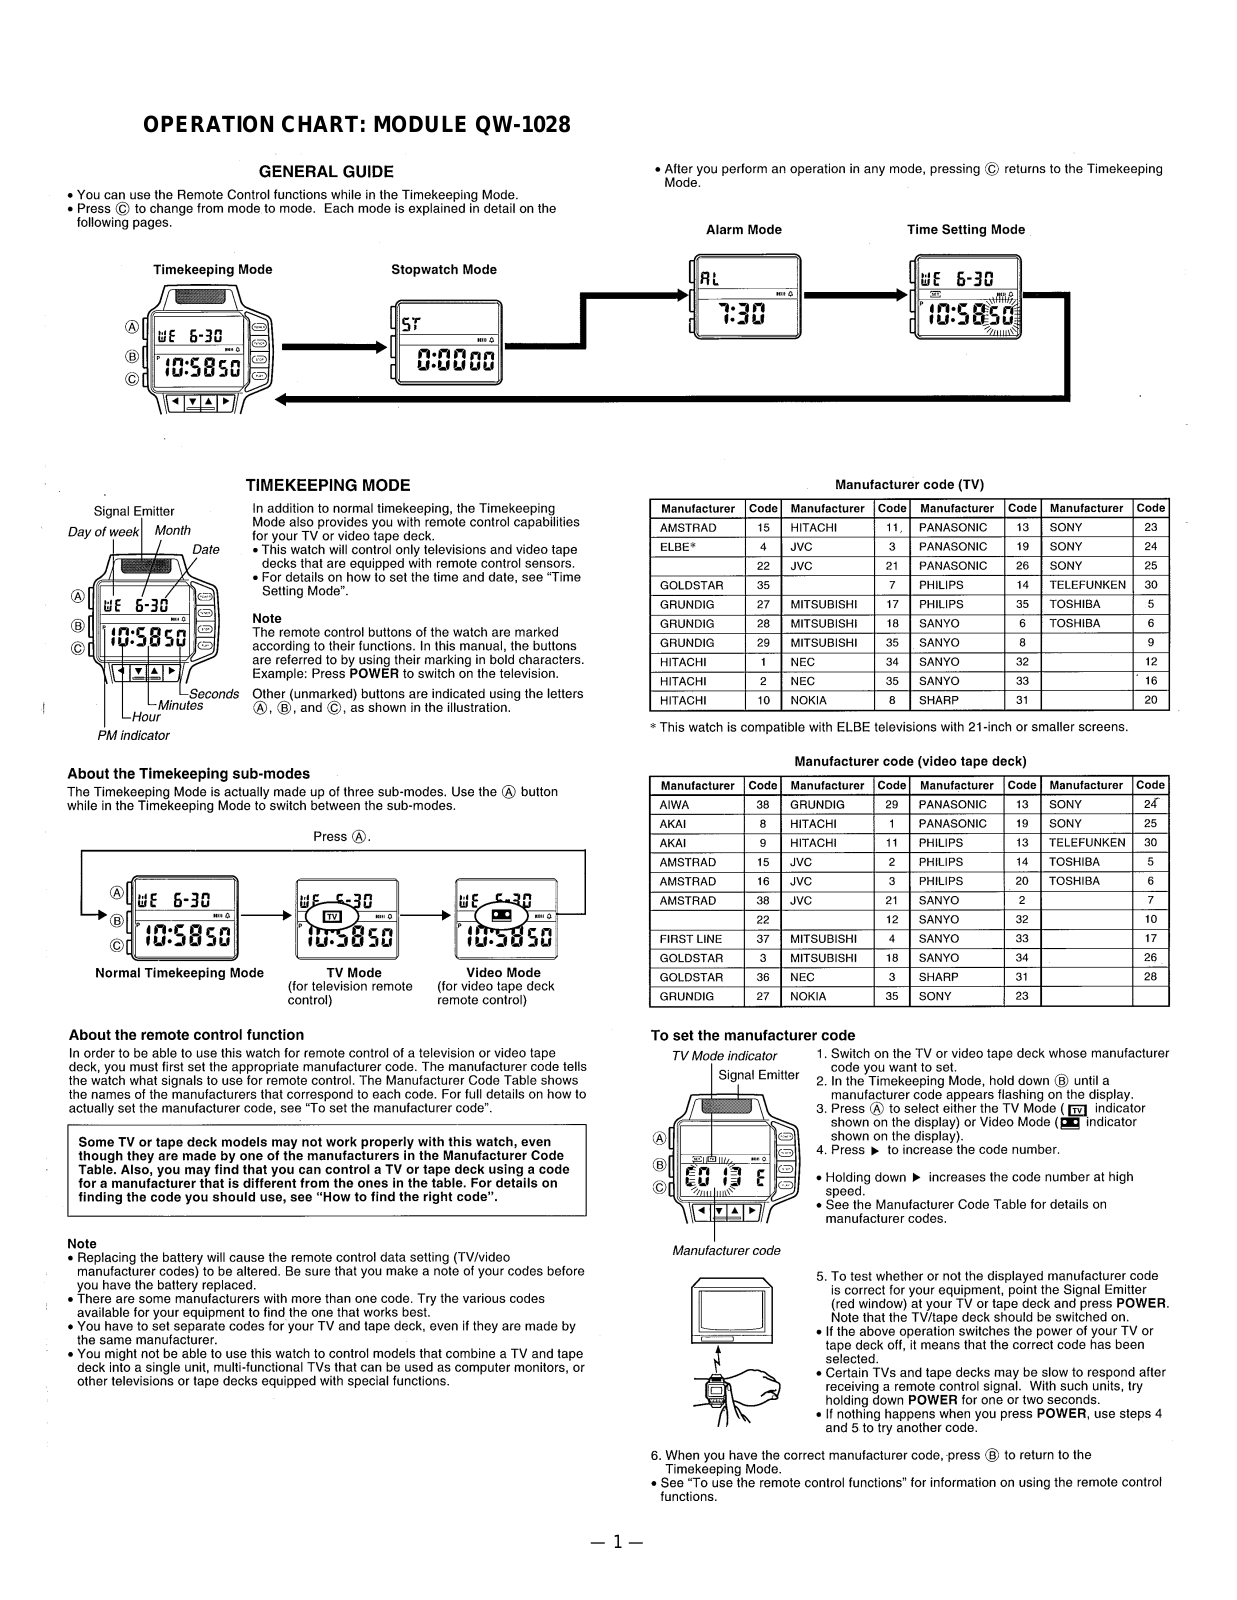 Casio 1028 Owner's Manual